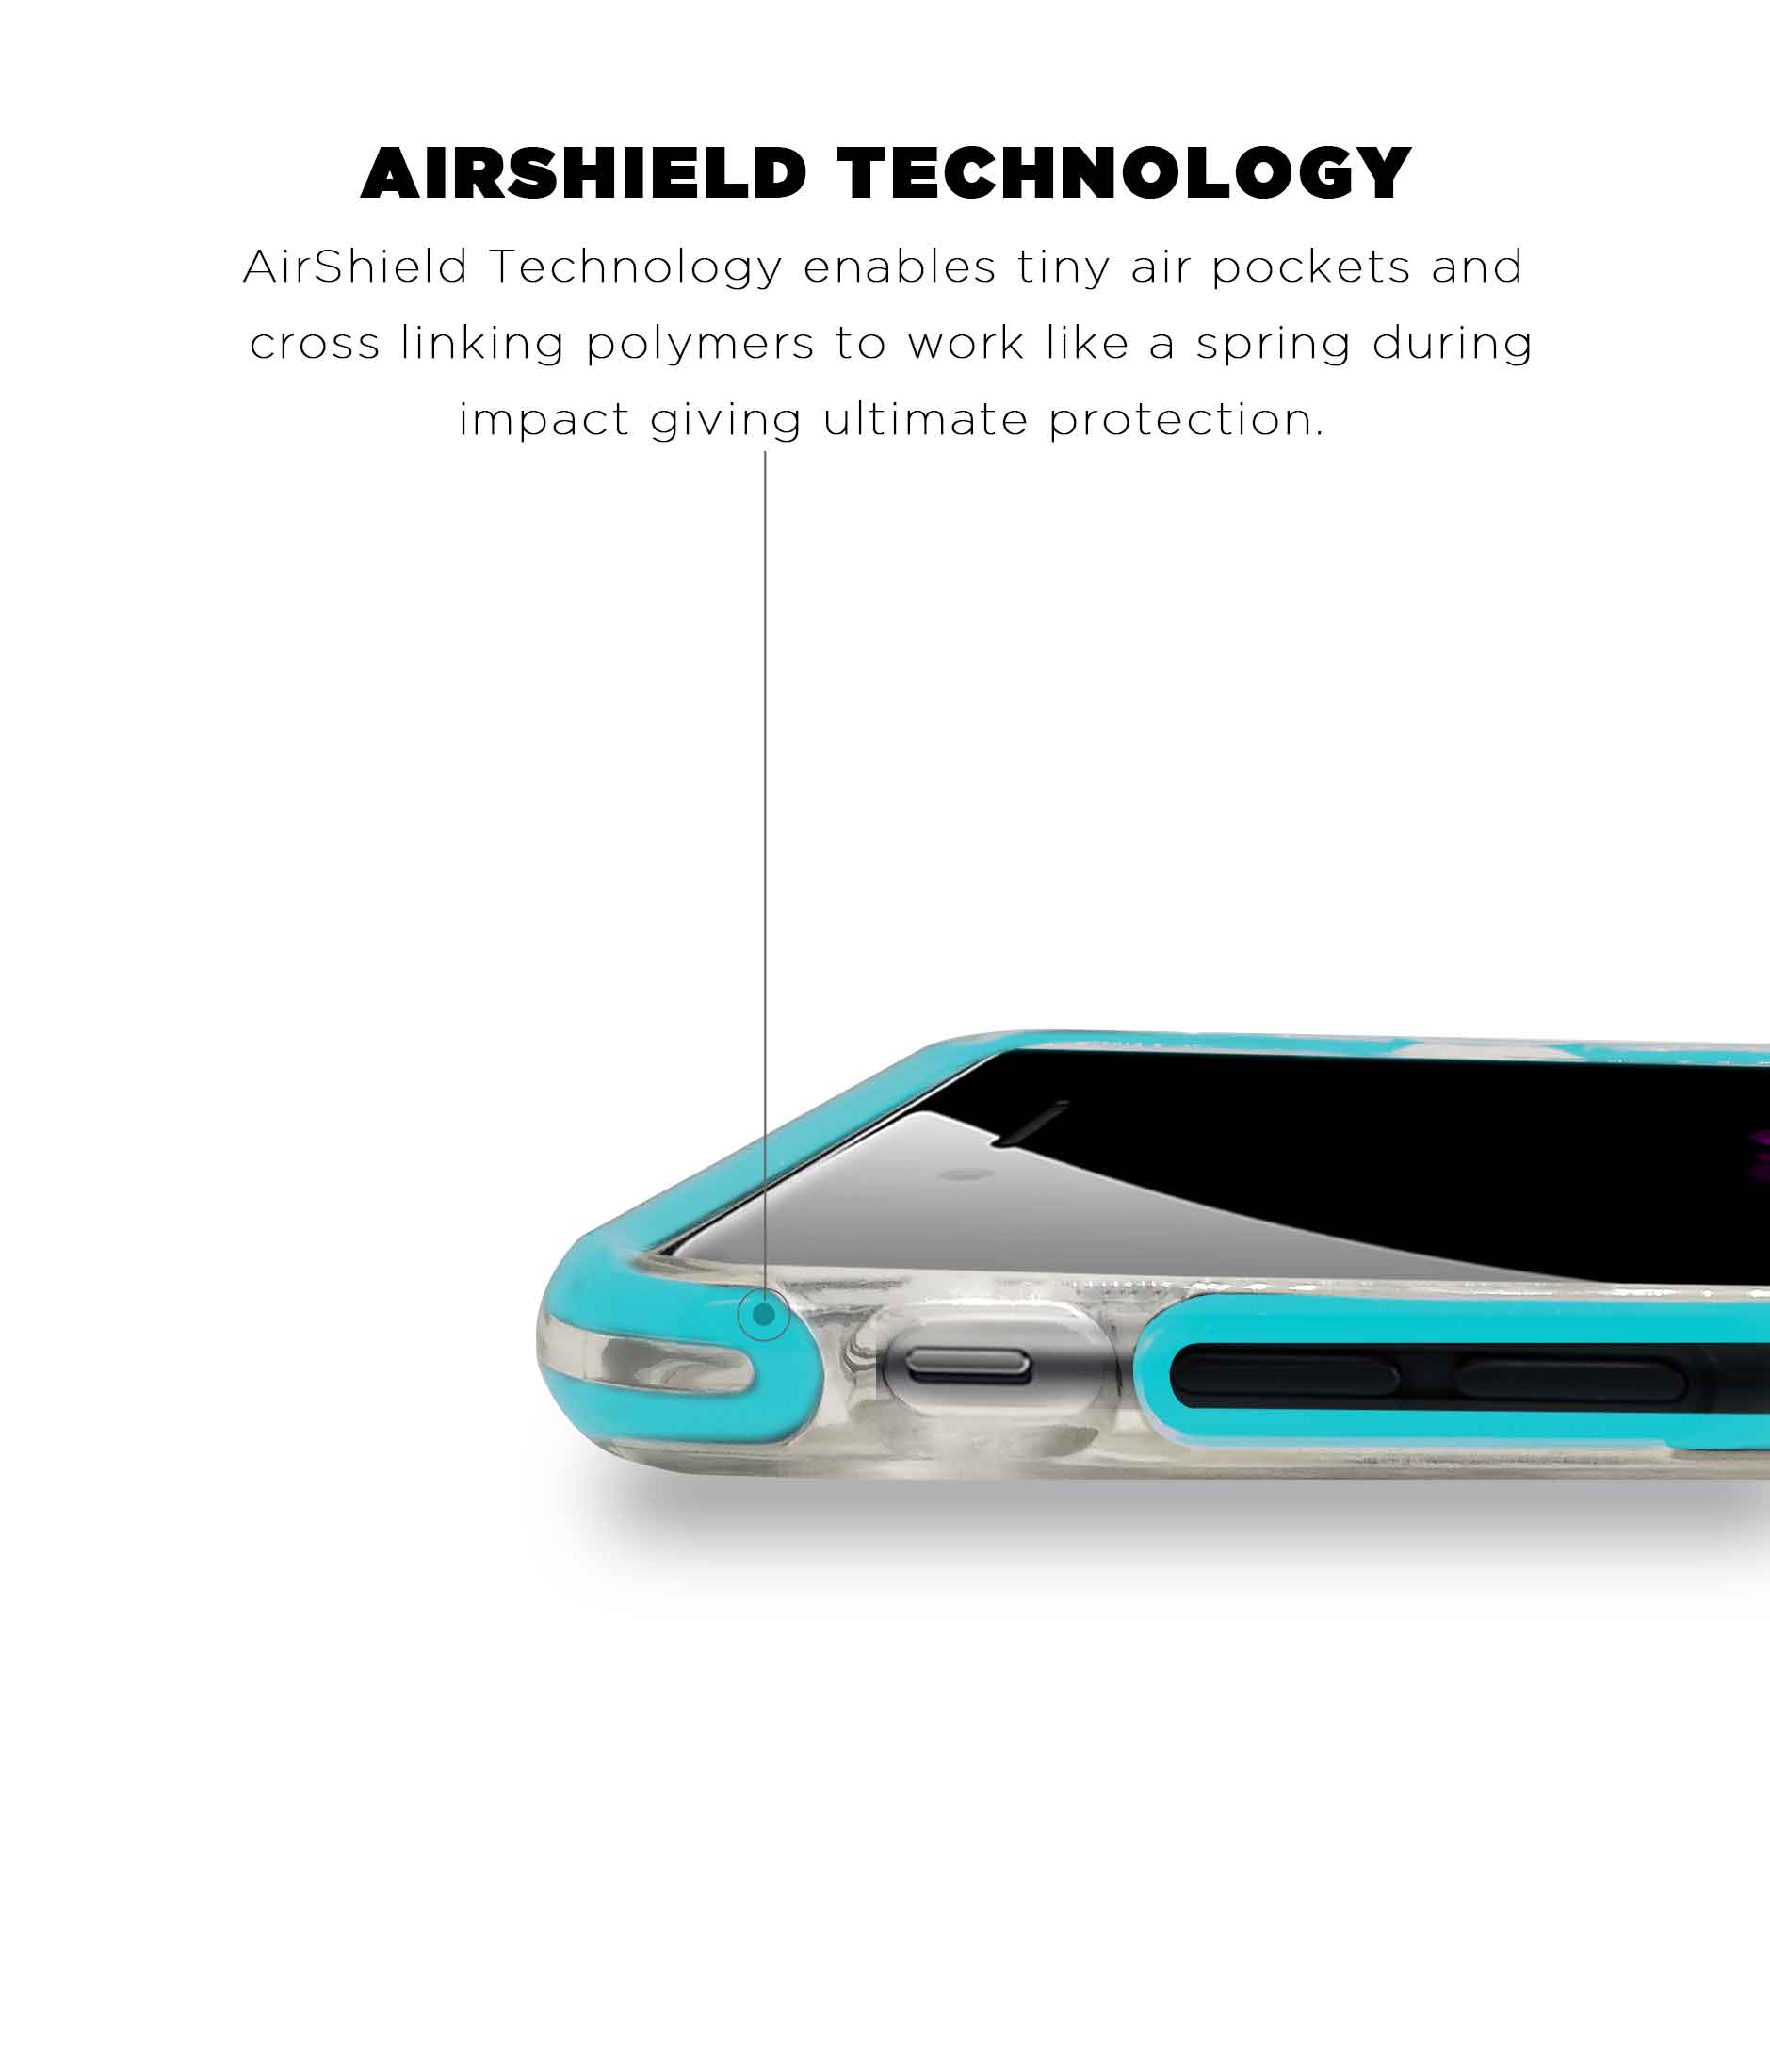 Illuminated Hulk - Extreme Phone Case for iPhone 6S